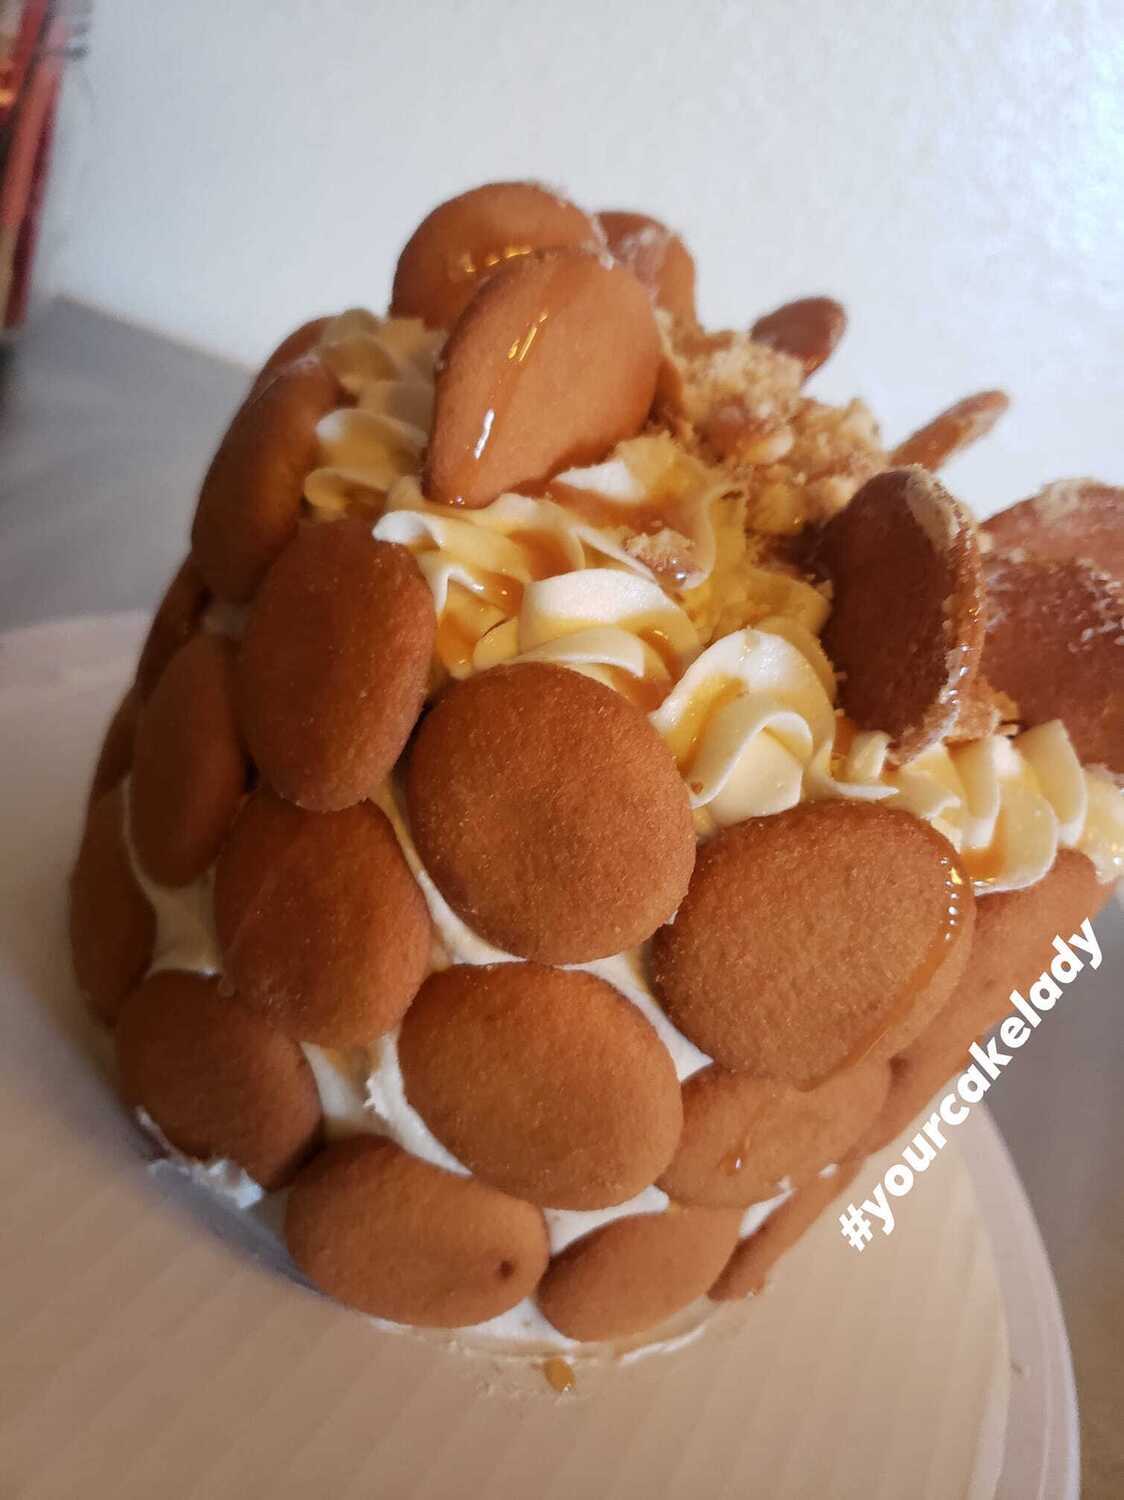 Banana Pudding Cake